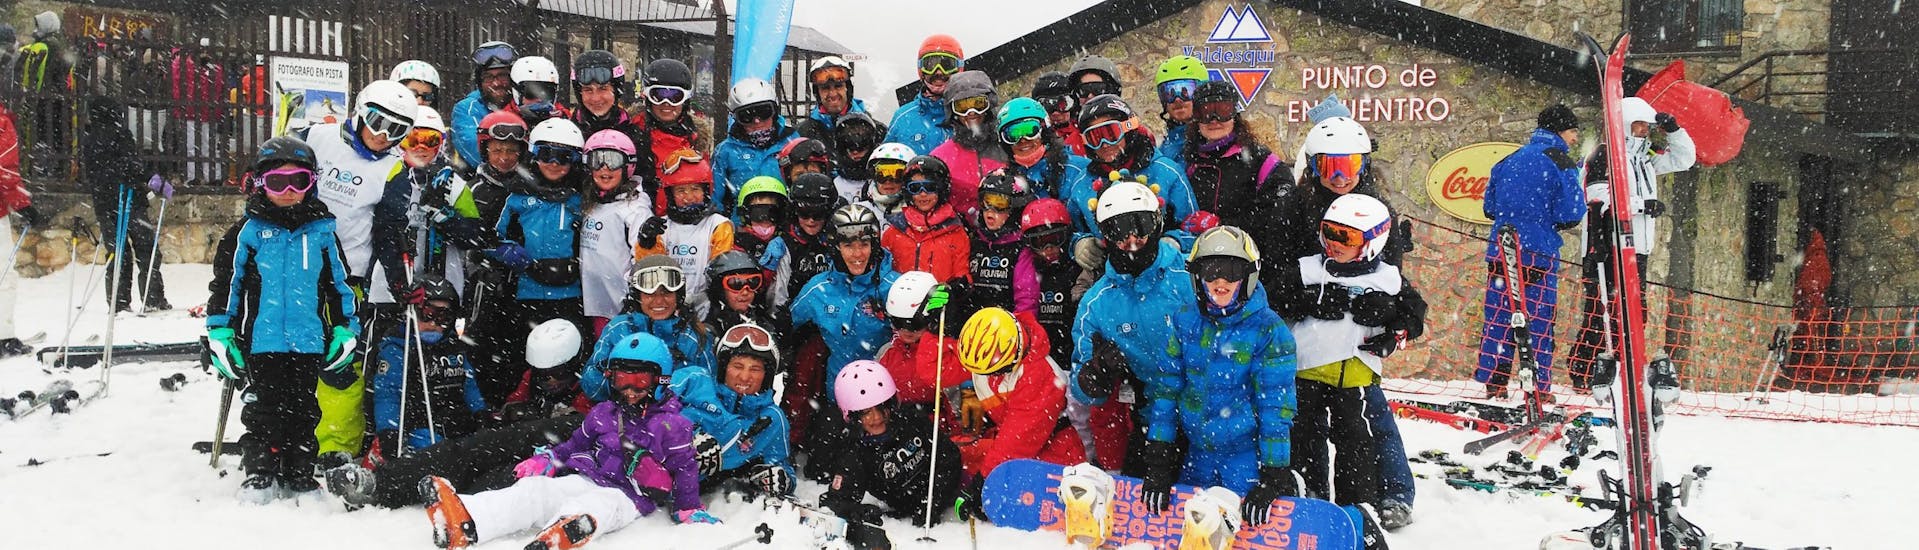 Skilessen voor kinderen vanaf 15 jaar - beginners.